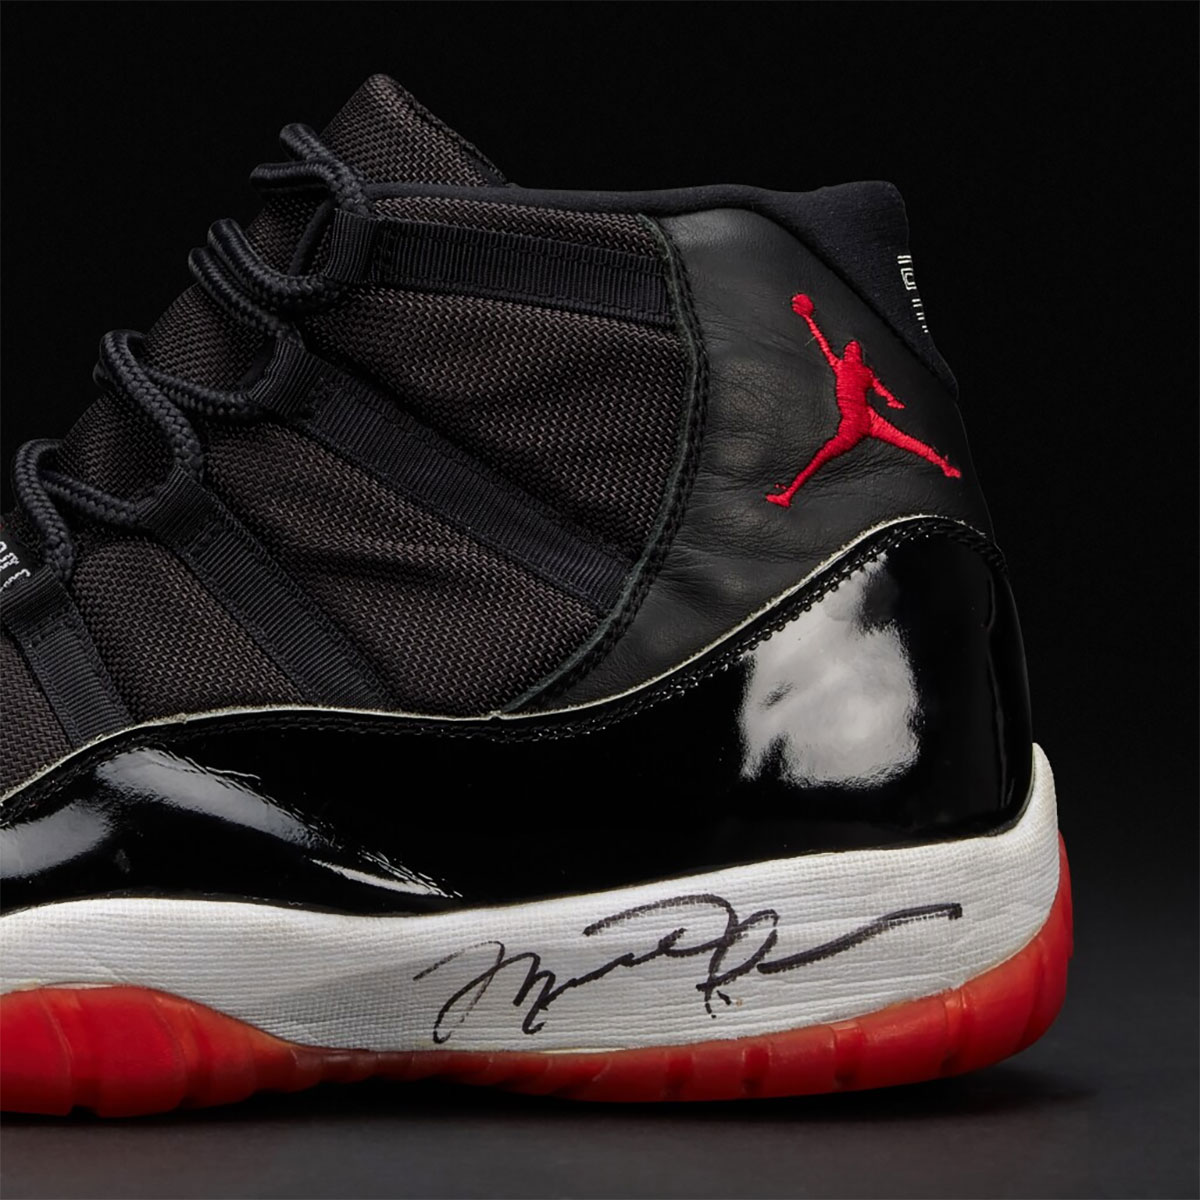 Air Jordan 11 Game Worn Autographed Shoes 1996 Finals Auction 6